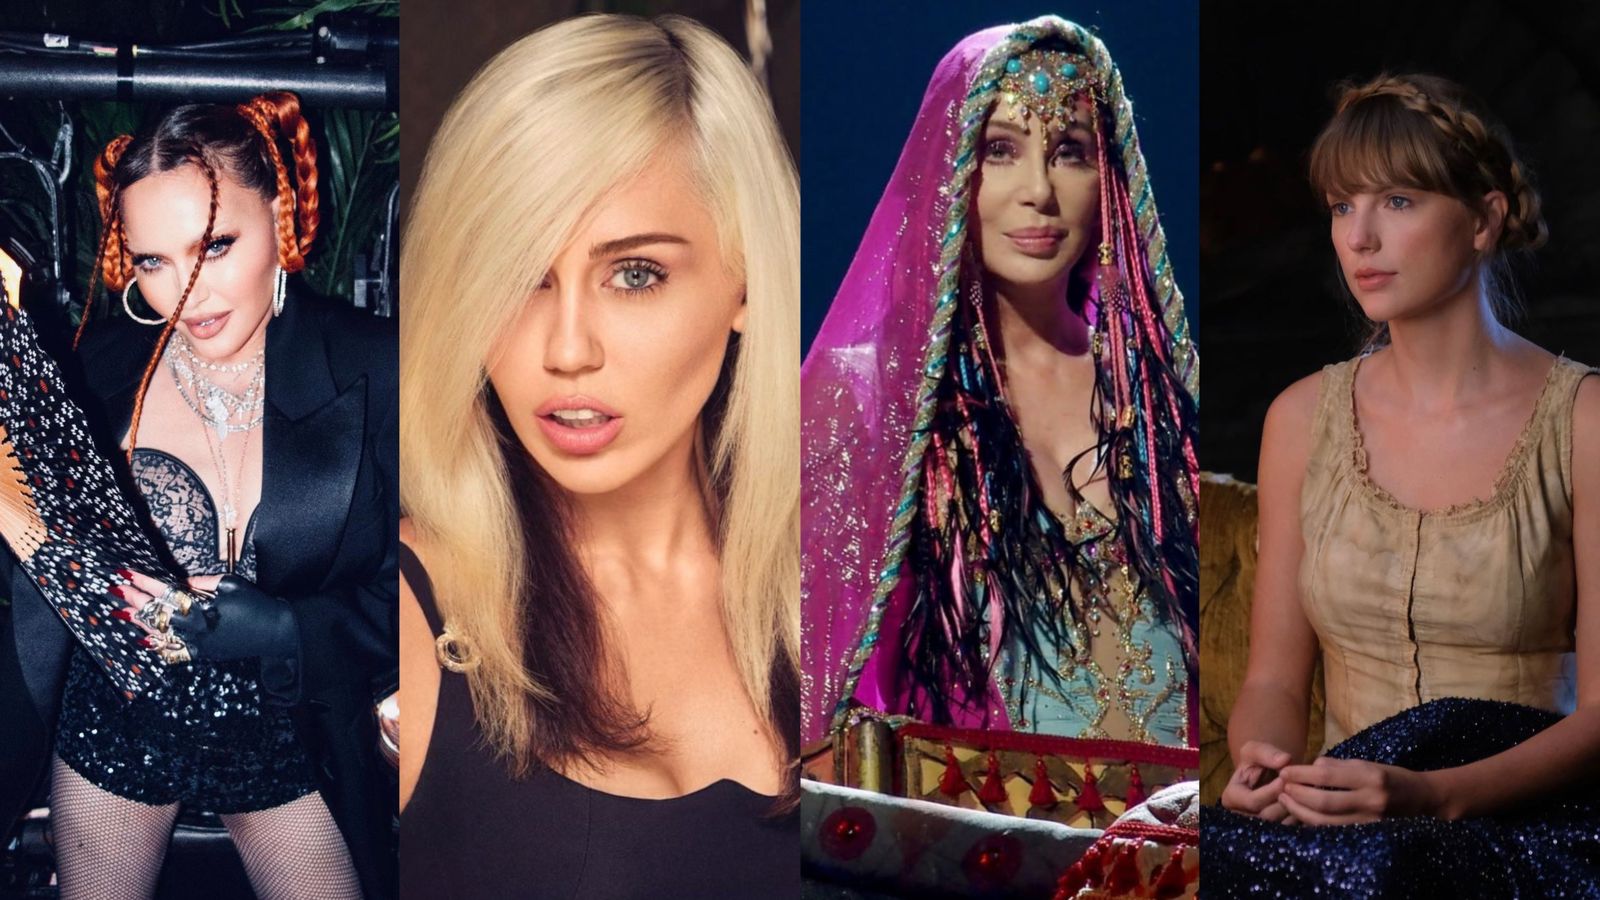 Seis mujeres, seis formas de reinventarse: de Taylor Swift a Miley Cyrus pasando por Madonna y Cher